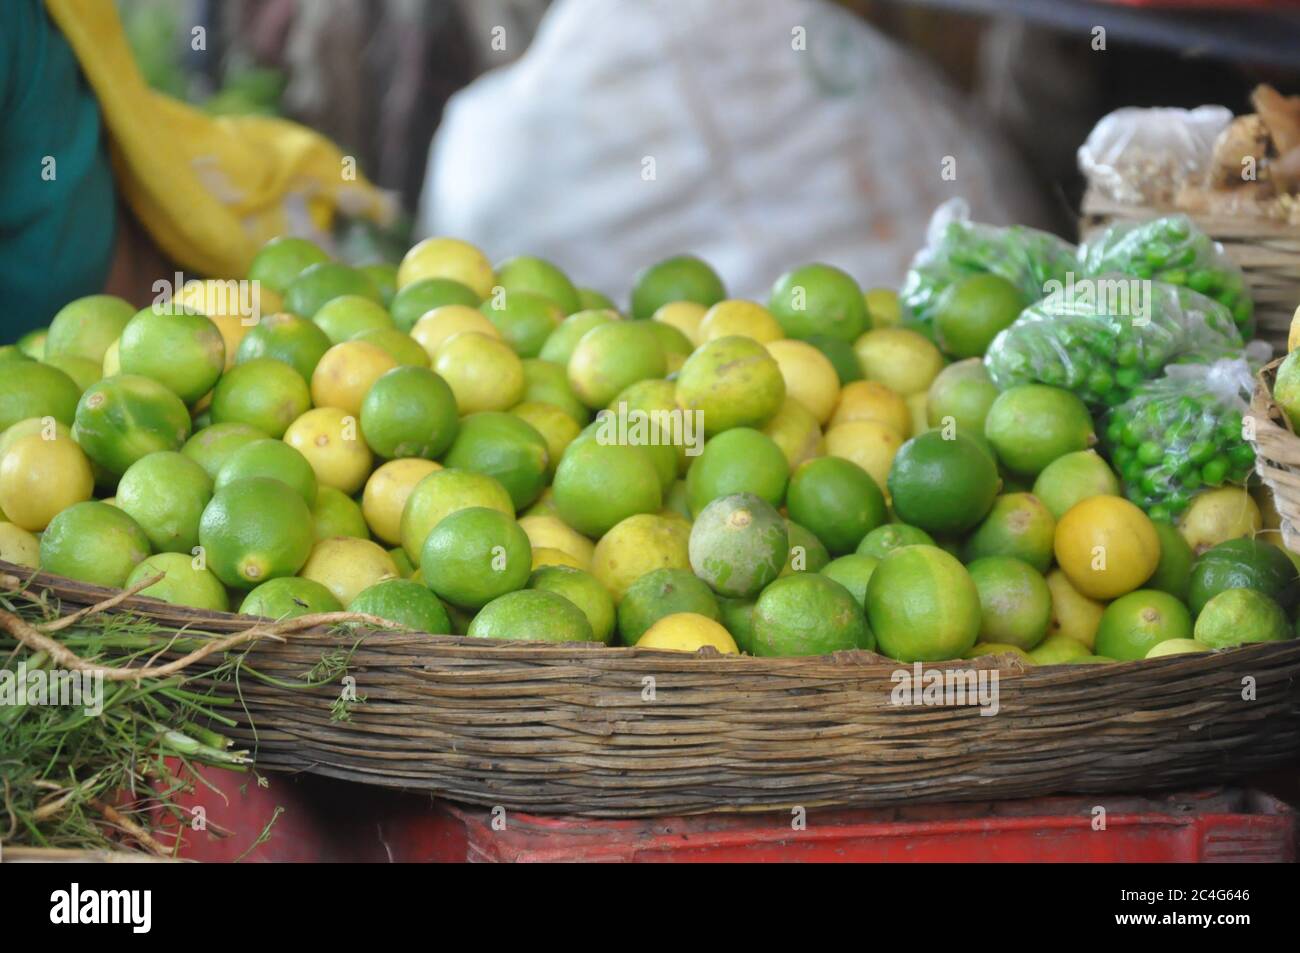 Panier de limes fraîches au marché indien Banque D'Images